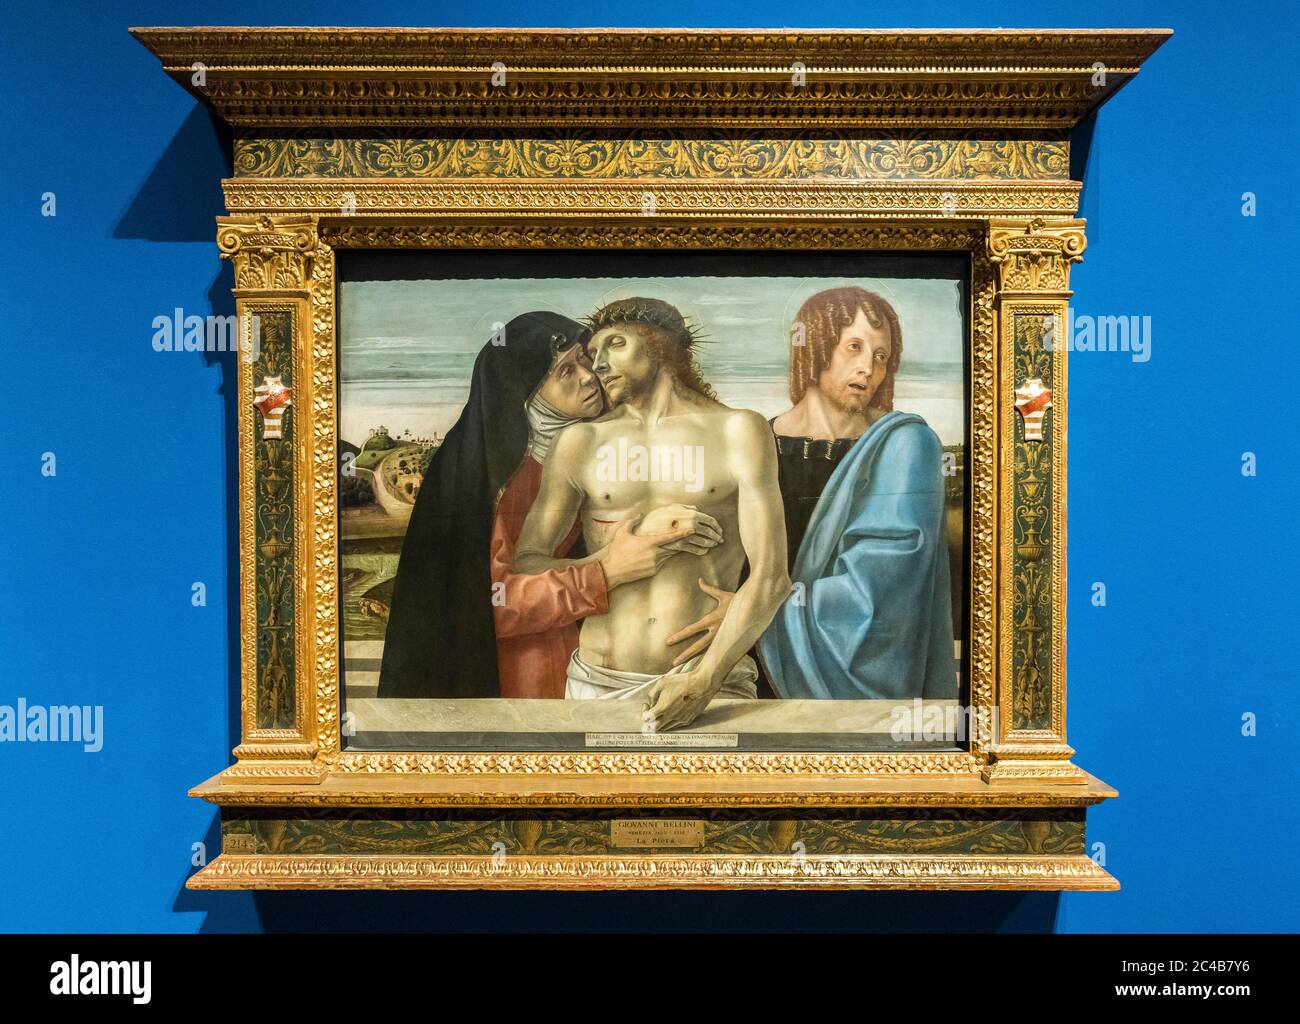 Pieta, Gemälde von Giovanni Bellini, 1430 - 1516, Renaissance, Pinacoteca di Brera, Mailand, Lombardei, Italien Stockfoto